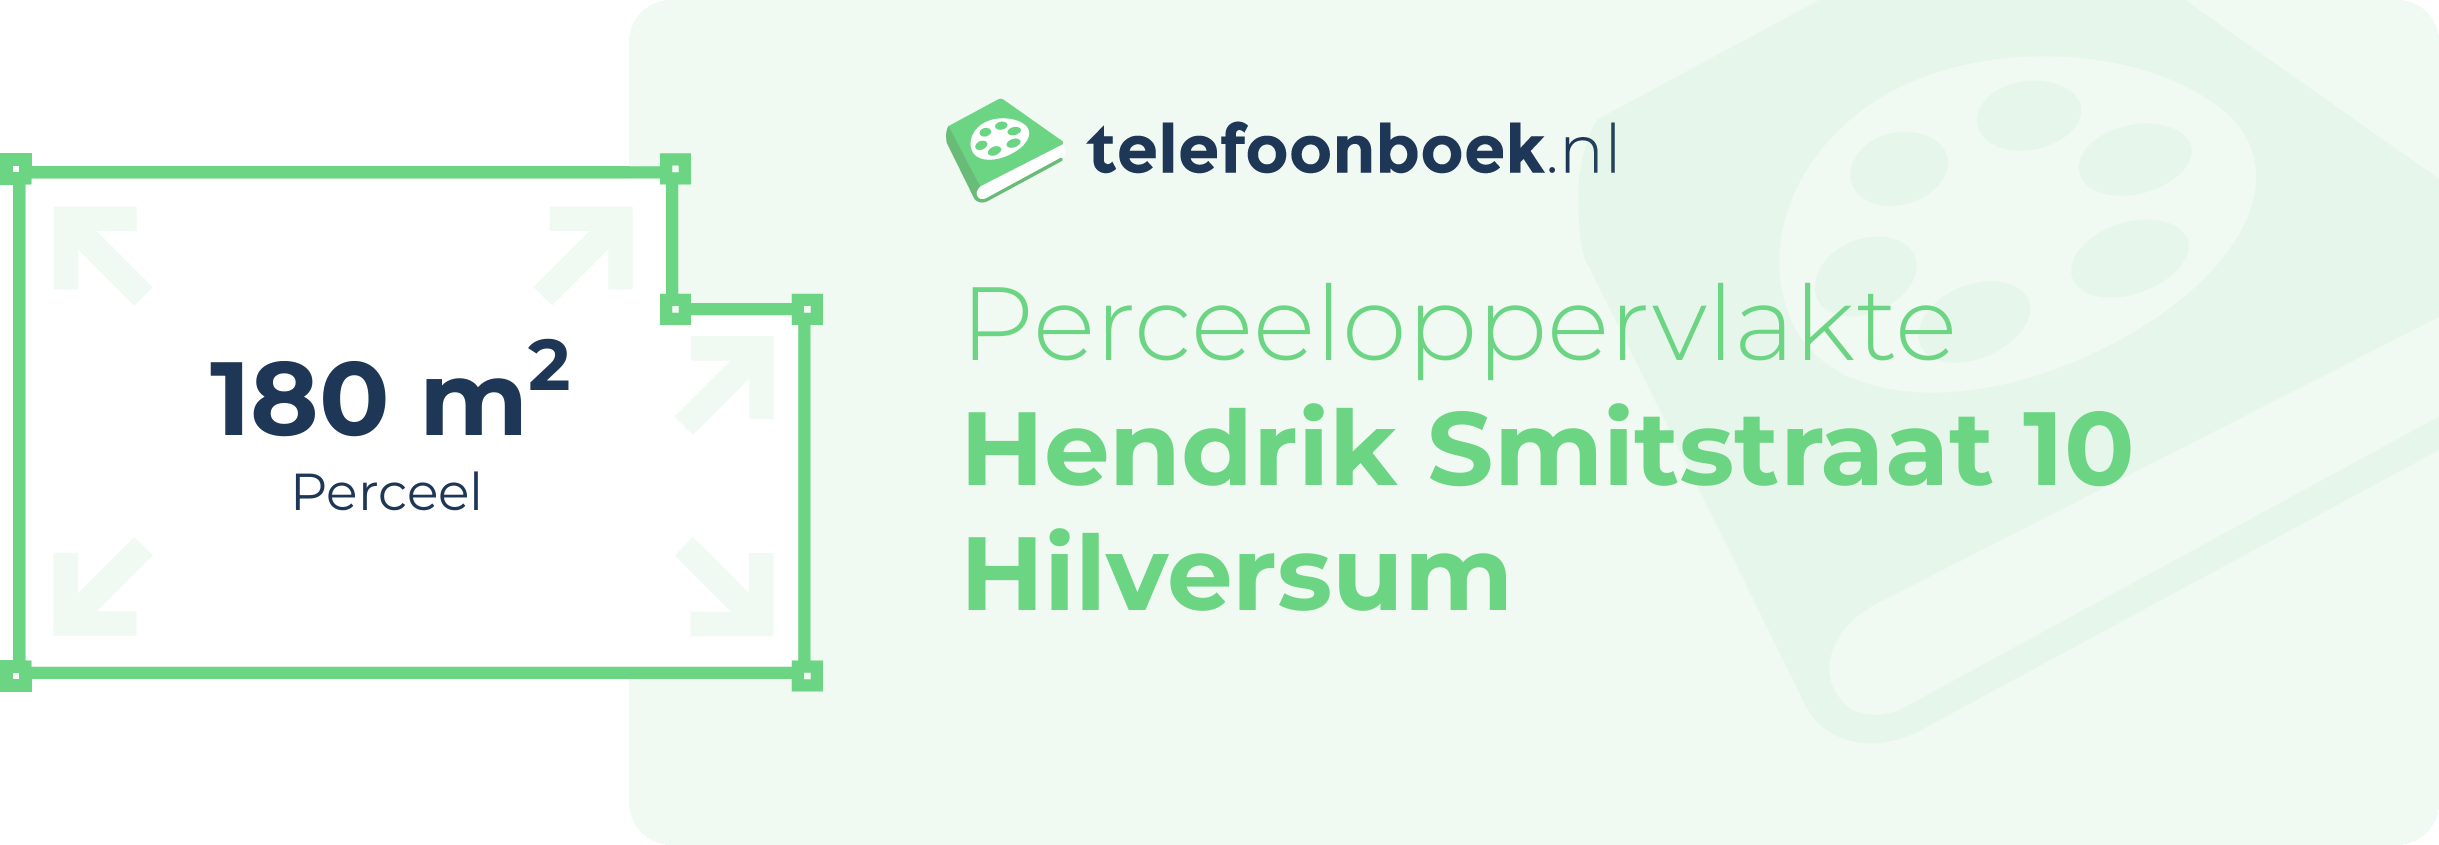 Perceeloppervlakte Hendrik Smitstraat 10 Hilversum